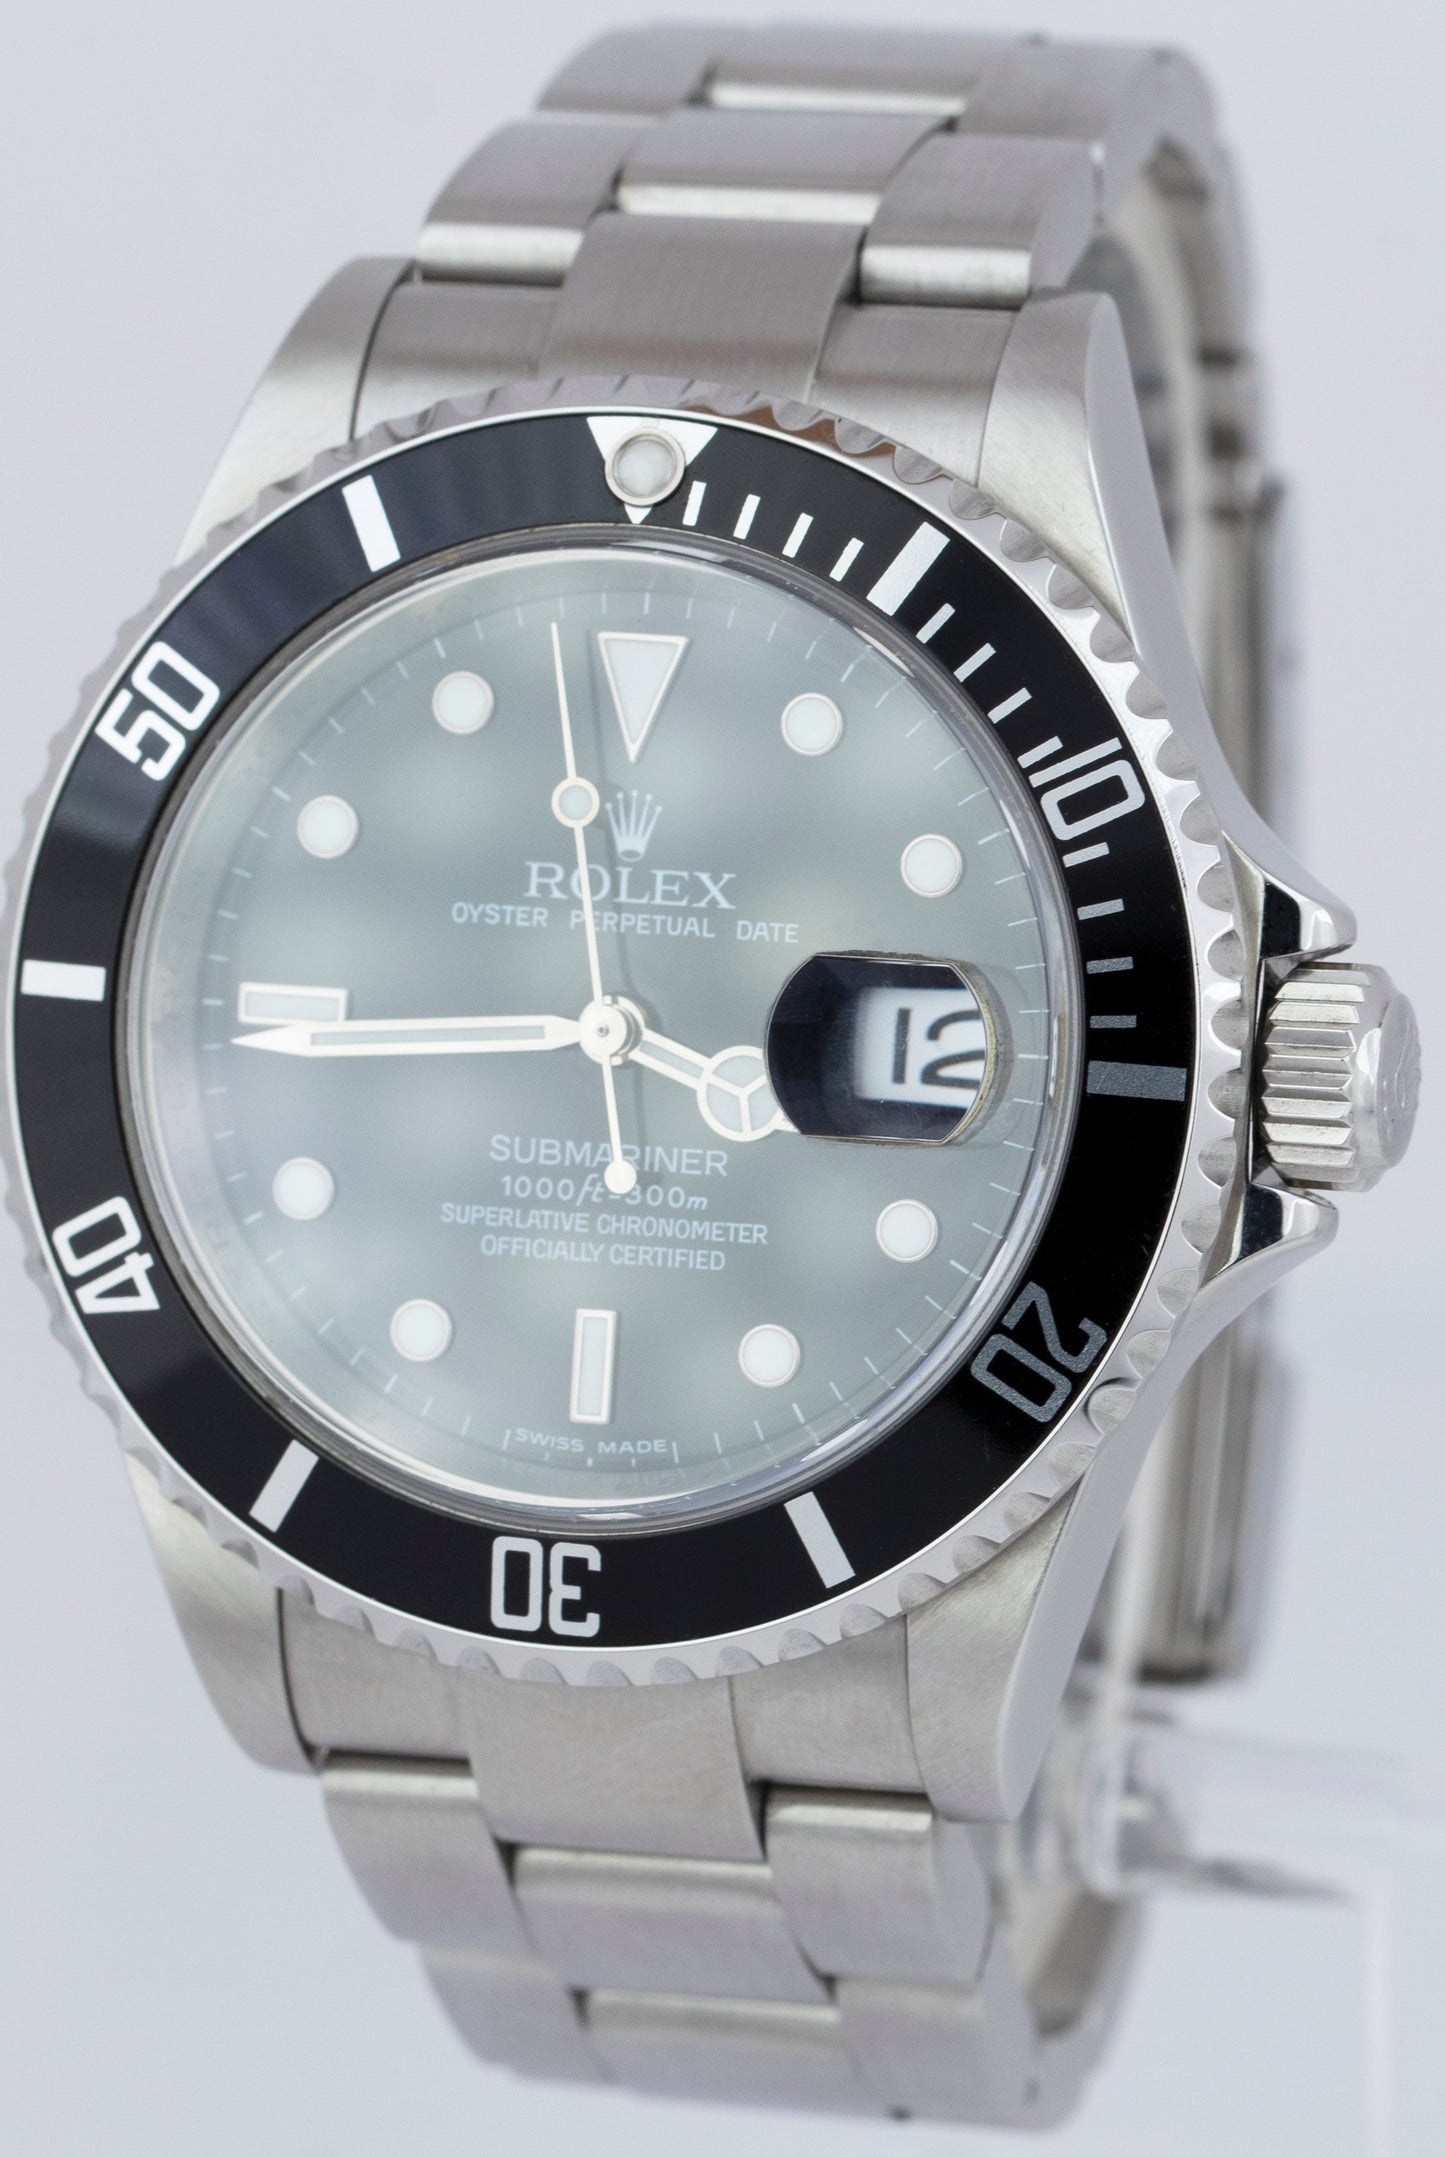 REHAUT 2010 Rolex Submariner Date Black Stainless Steel 16610 40mm Watch CARD